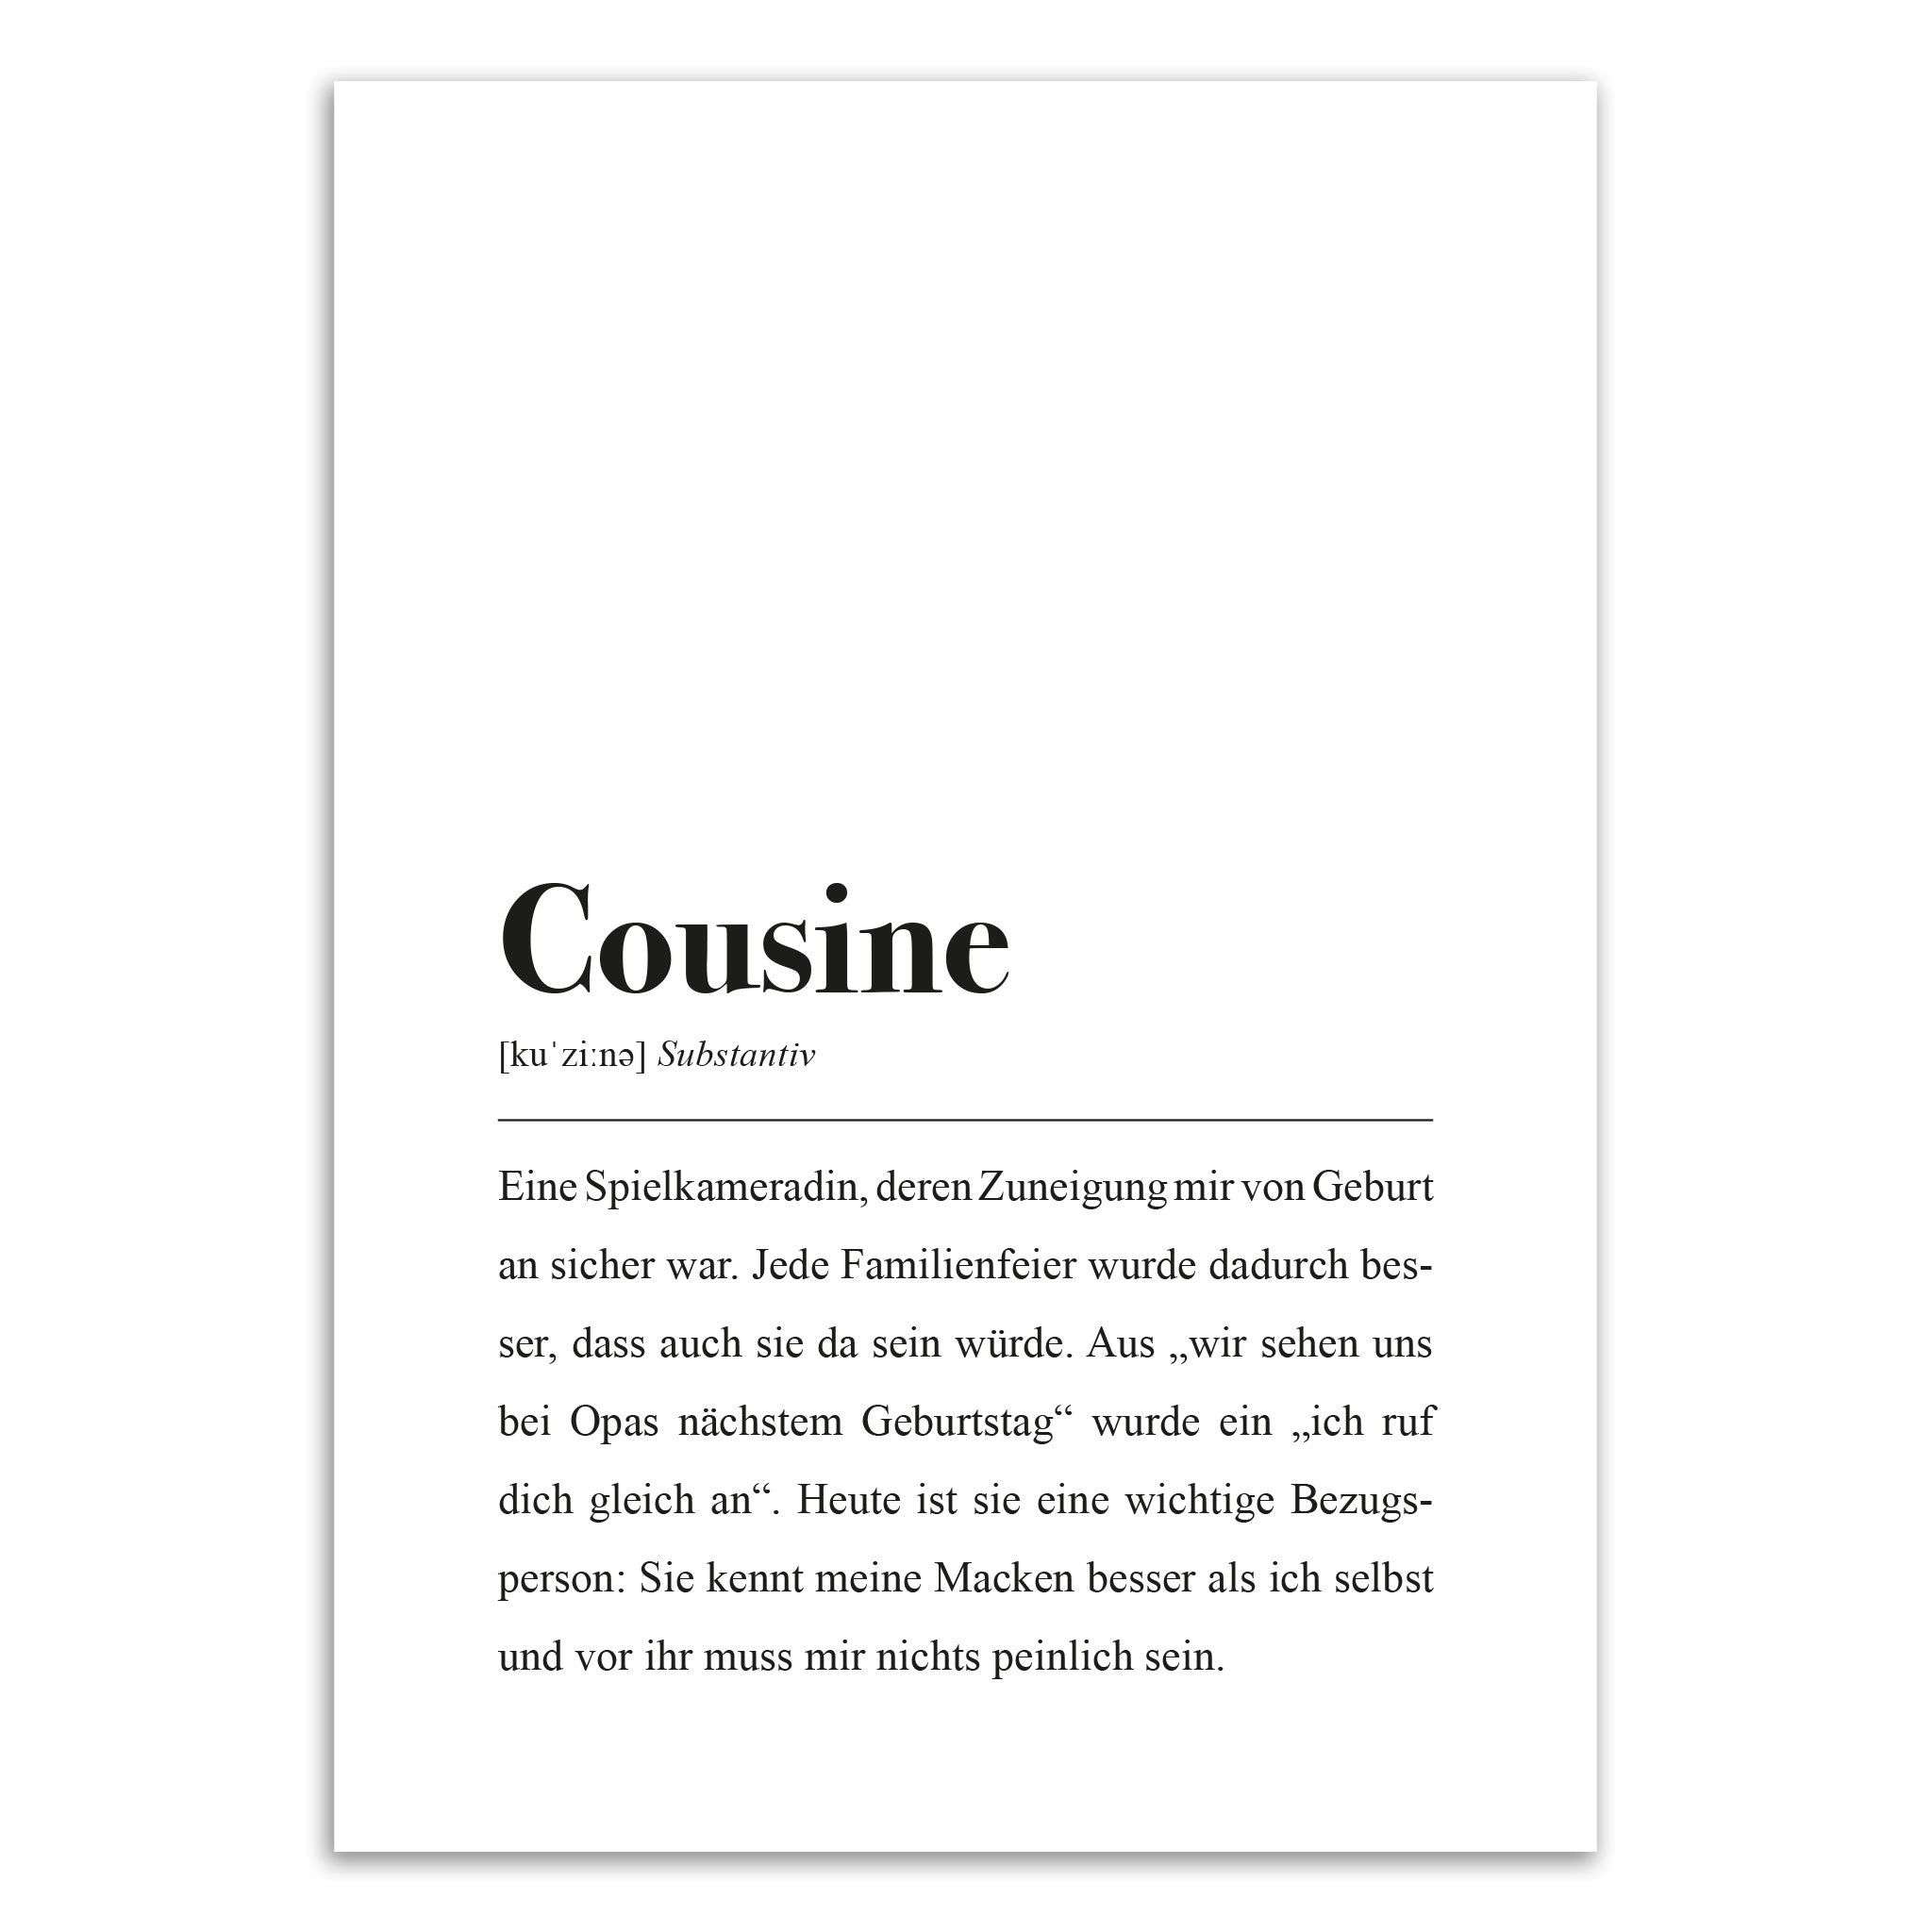 Wörterbuch-Stil Duden Bedeutung des Wortes "Cousine"